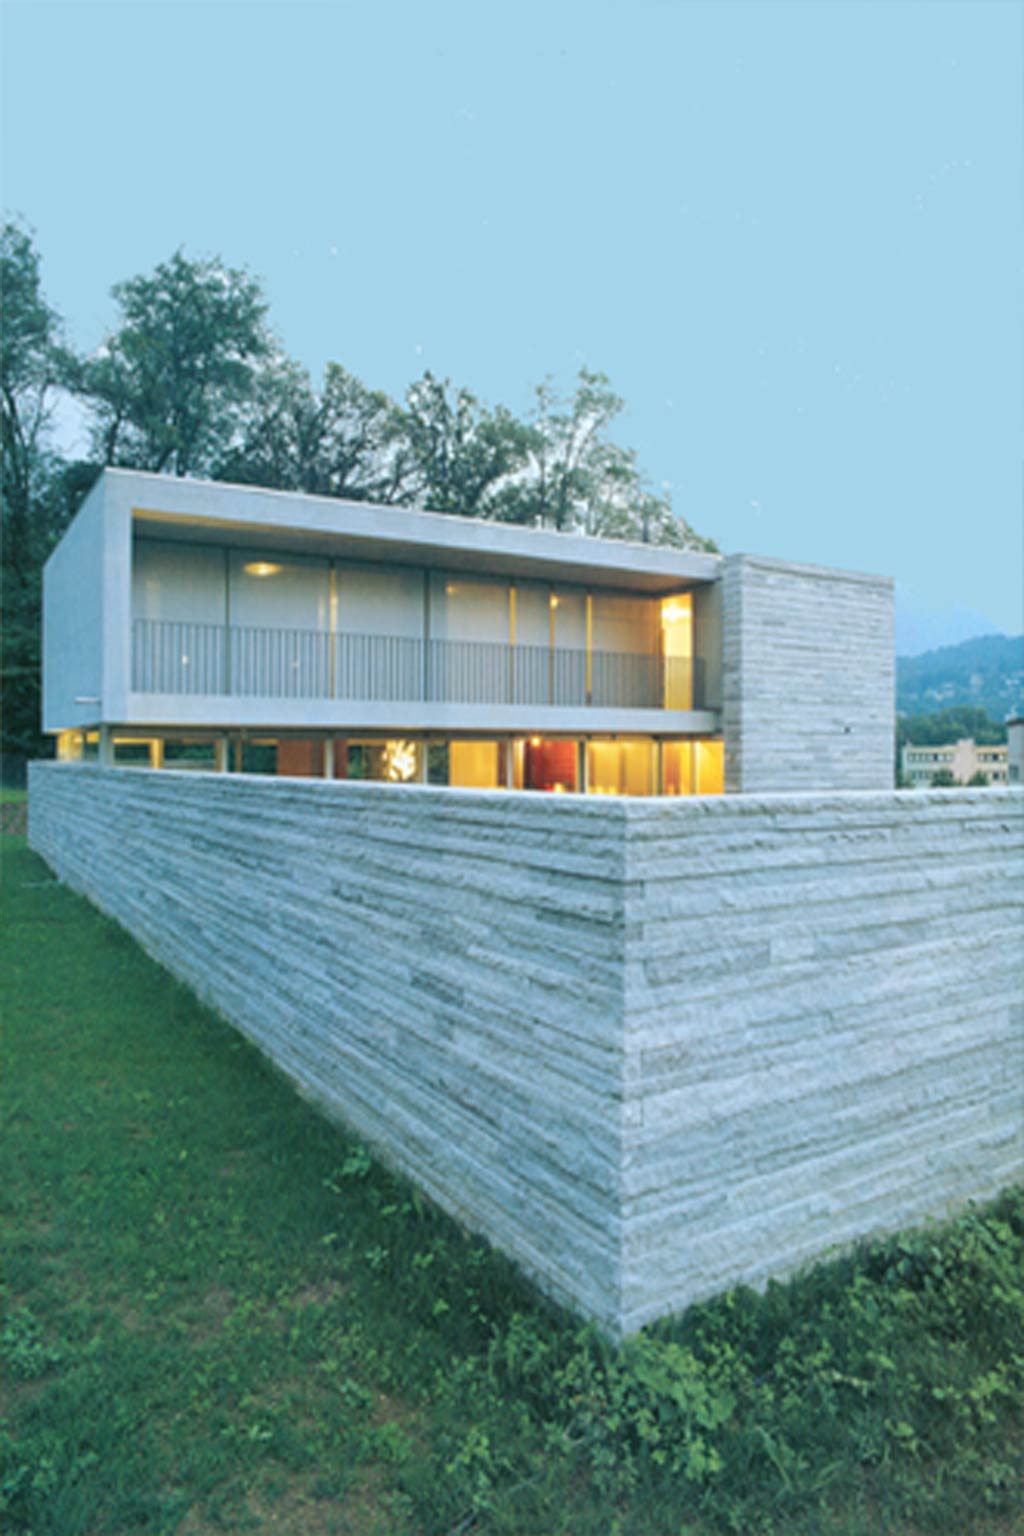 Villa con architettura moderna in pietra a Manno lavori privati Studio di architettura Forni & Gueli